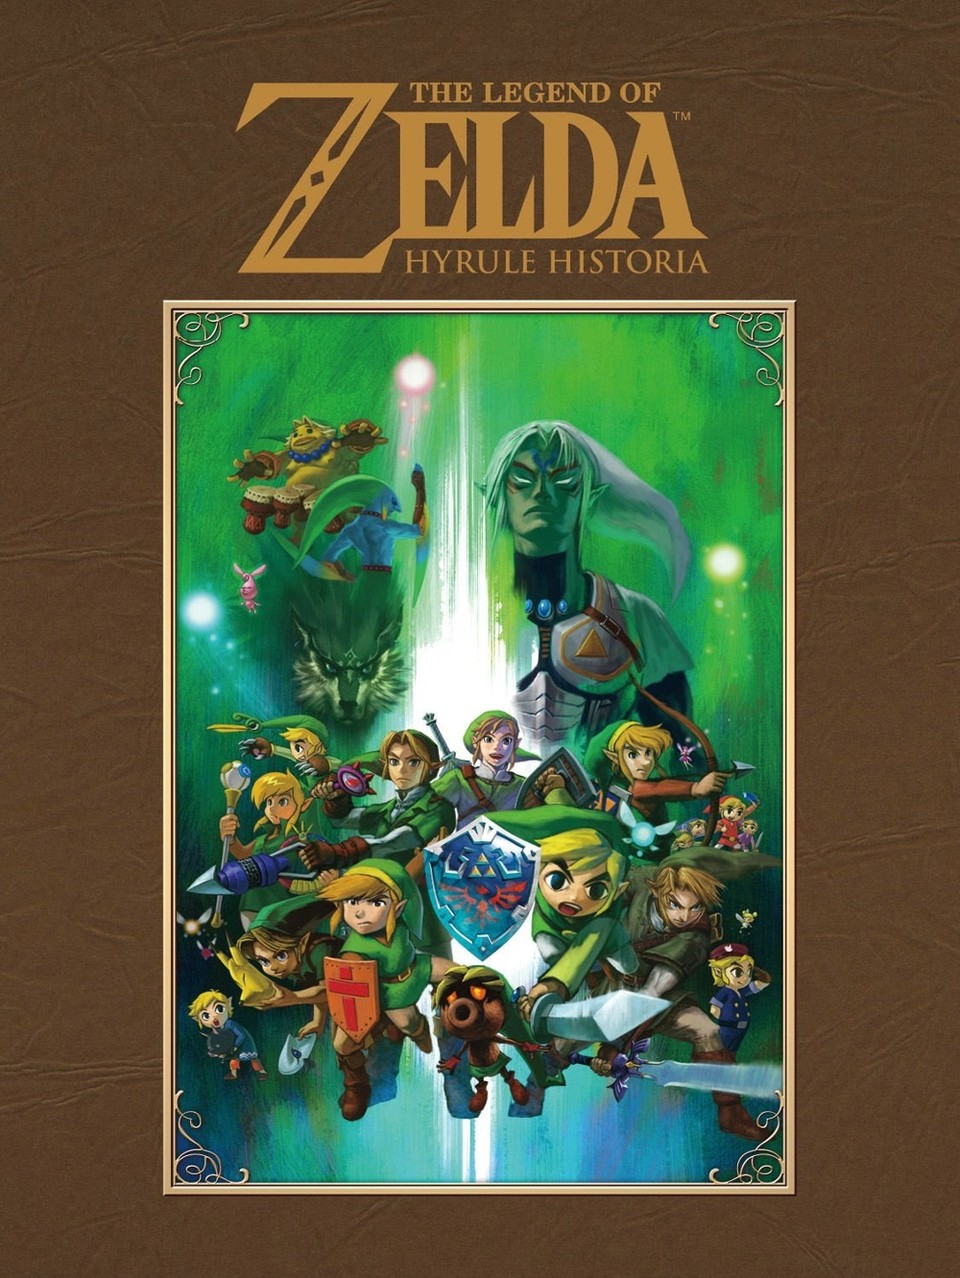 The Legend of Zelda: Hyrule Historia bricht schon in den ersten Wochen Verkaufs-Rekorde.